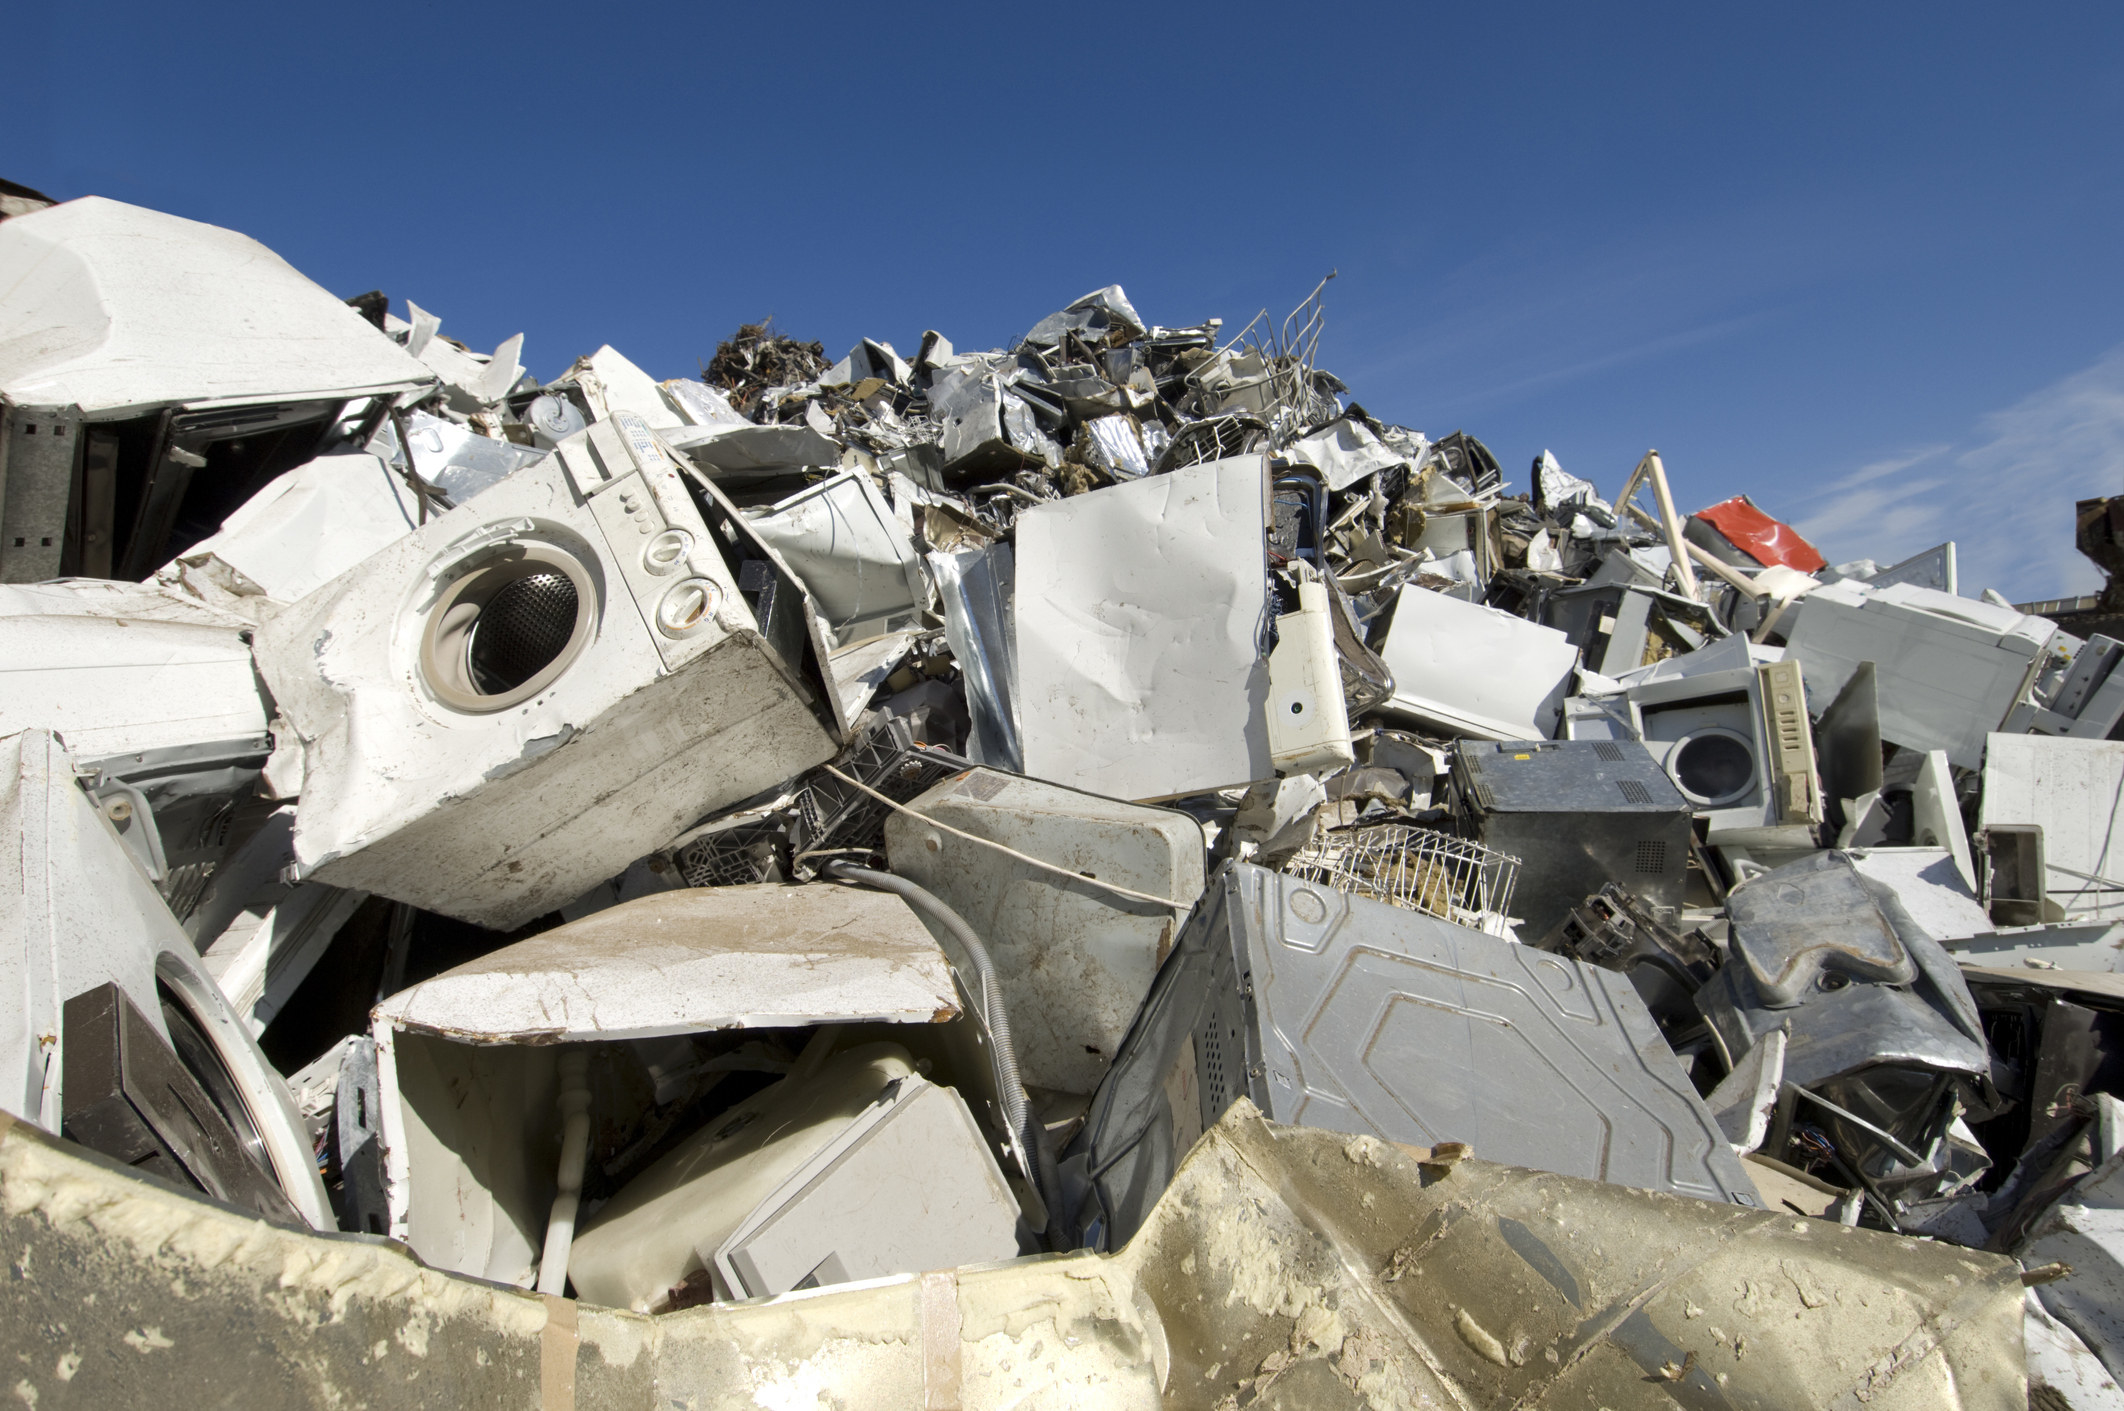 A pile of broken appliances at a junkyard